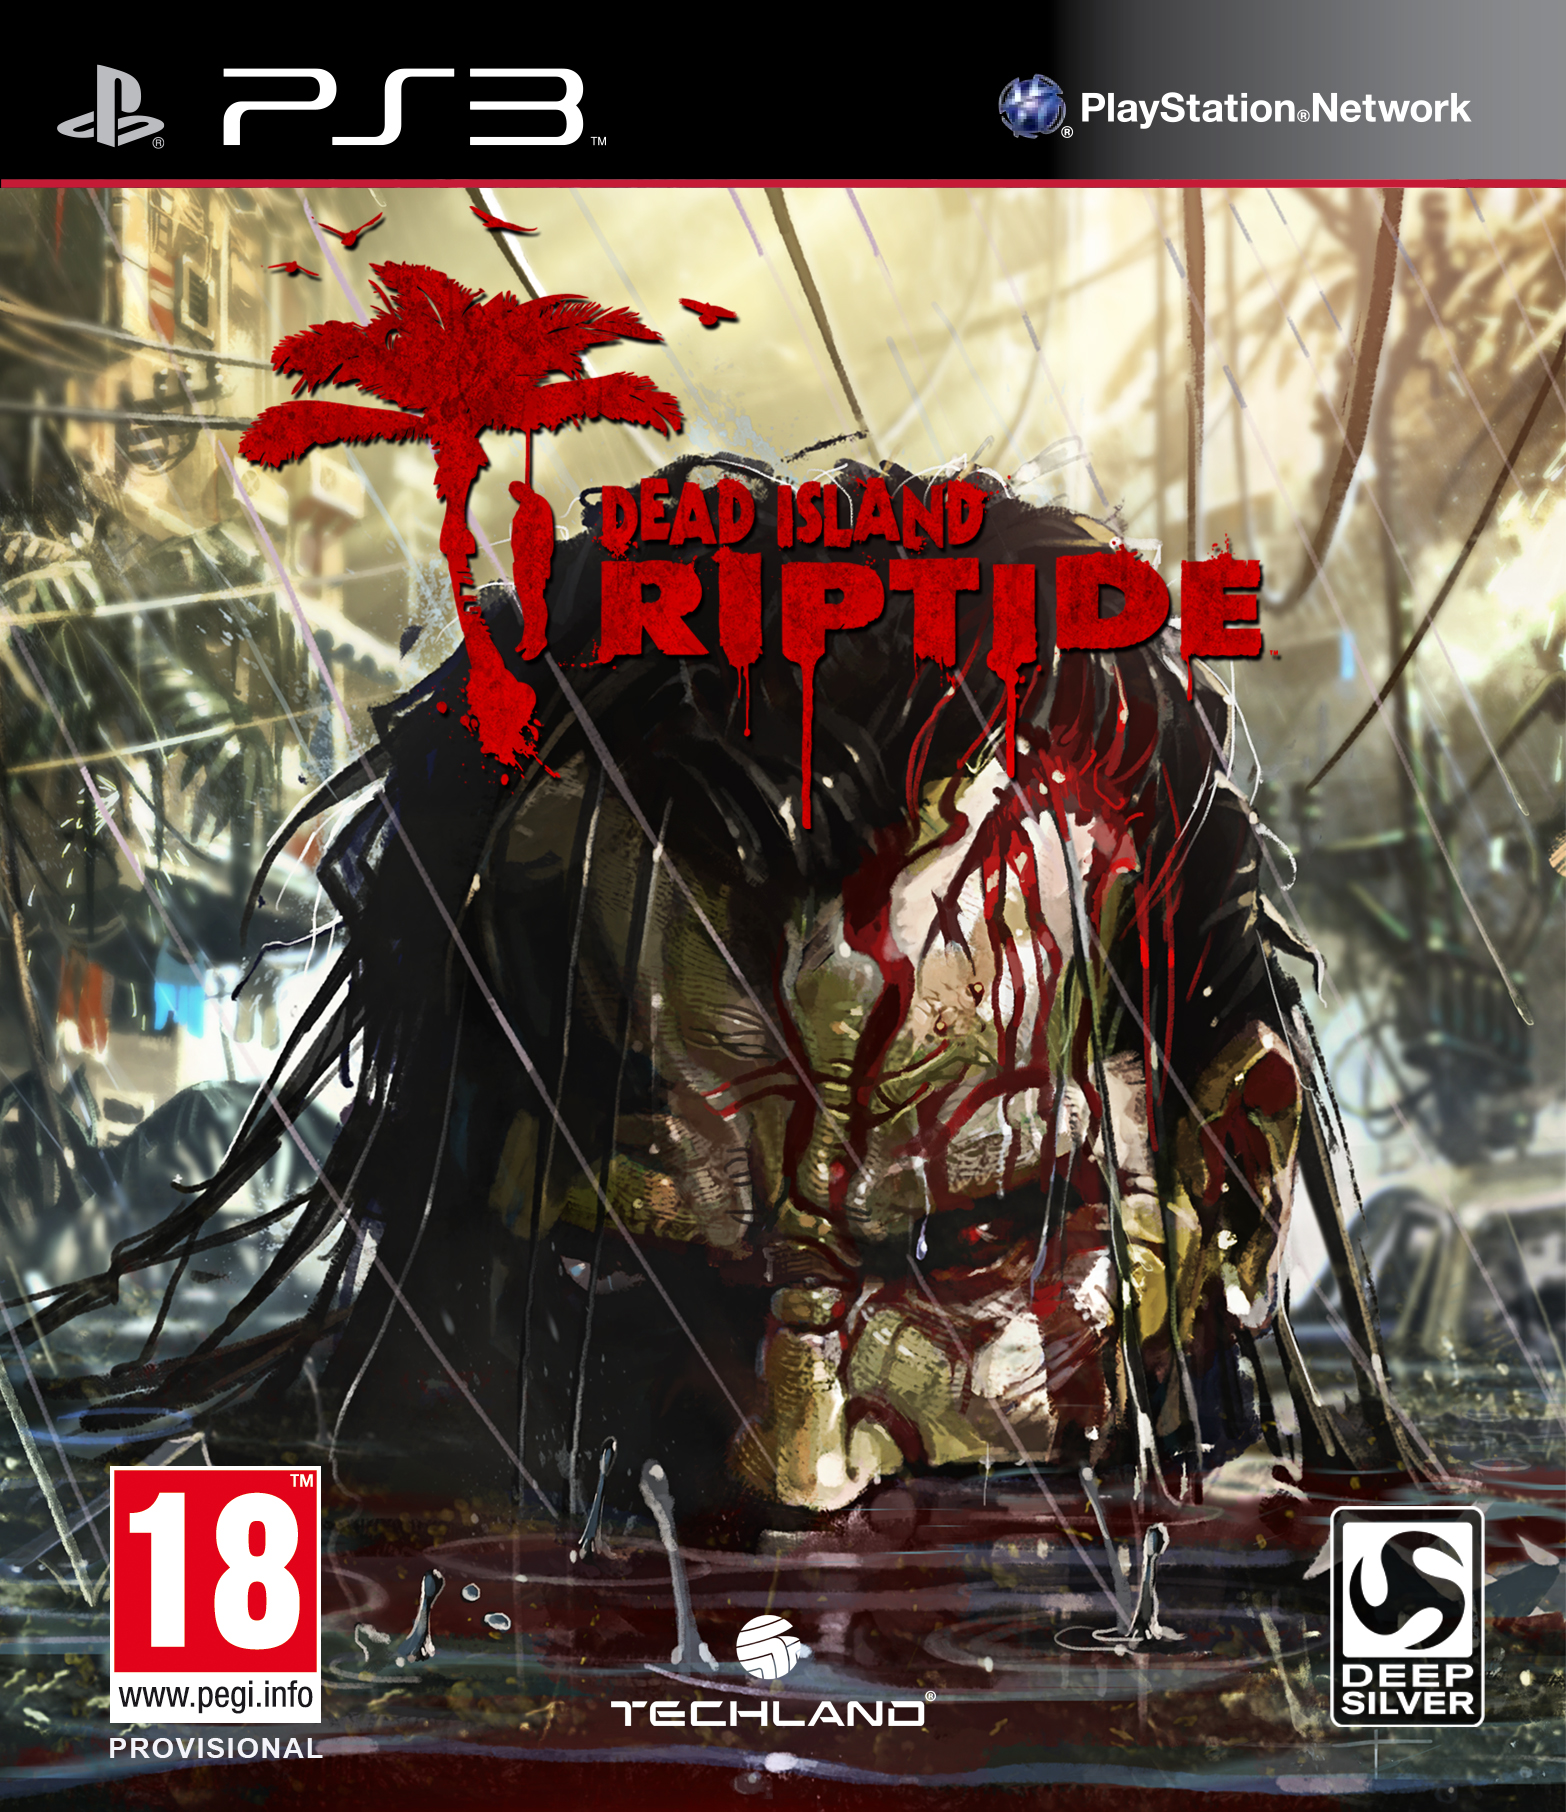 Dead Island Riptide Packshot - Dead Island Riptide: Release enthüllt + Packshot